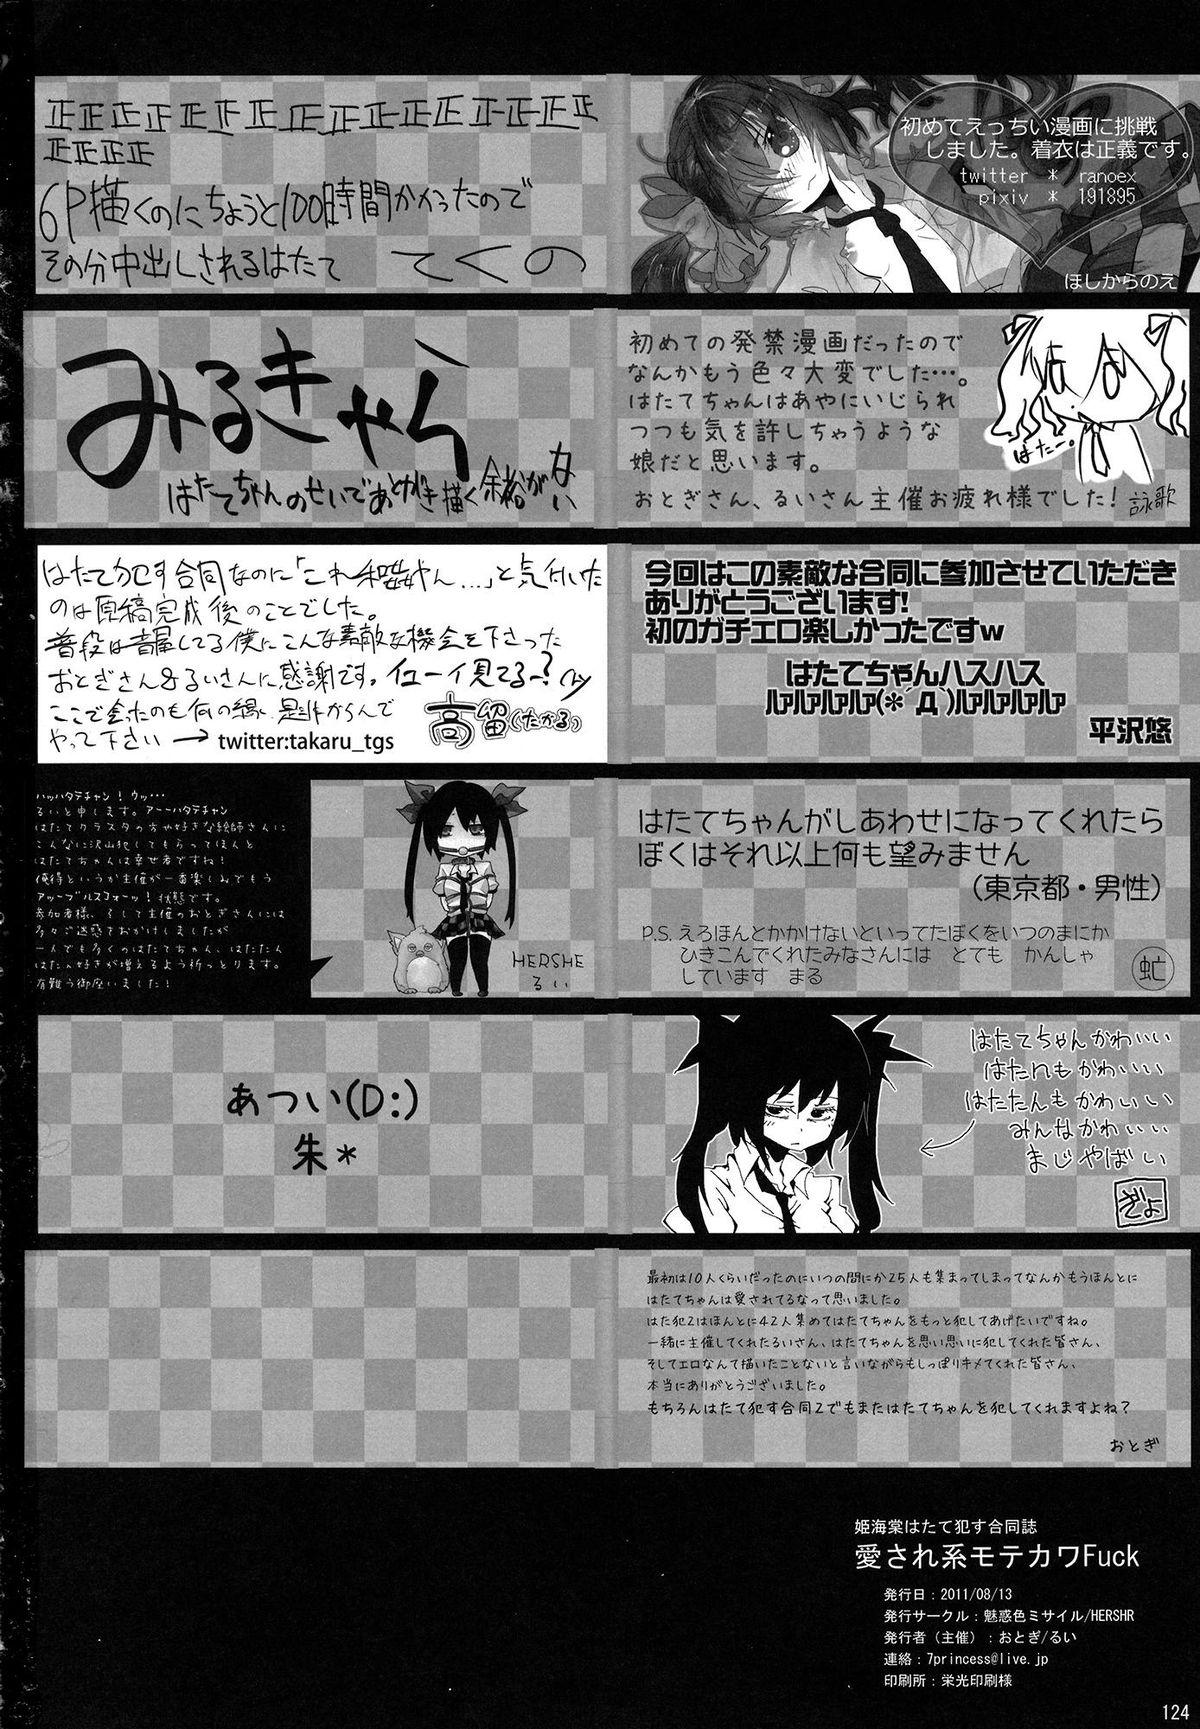 Lady (C80) [Miwaku-iro Missile, HERSHR (Otogi, Rui)] Himekaidou Hatate Okasu Goudou - Aisare-kei Motekawa Fuck! (Touhou Project) - Touhou project Pale - Page 125